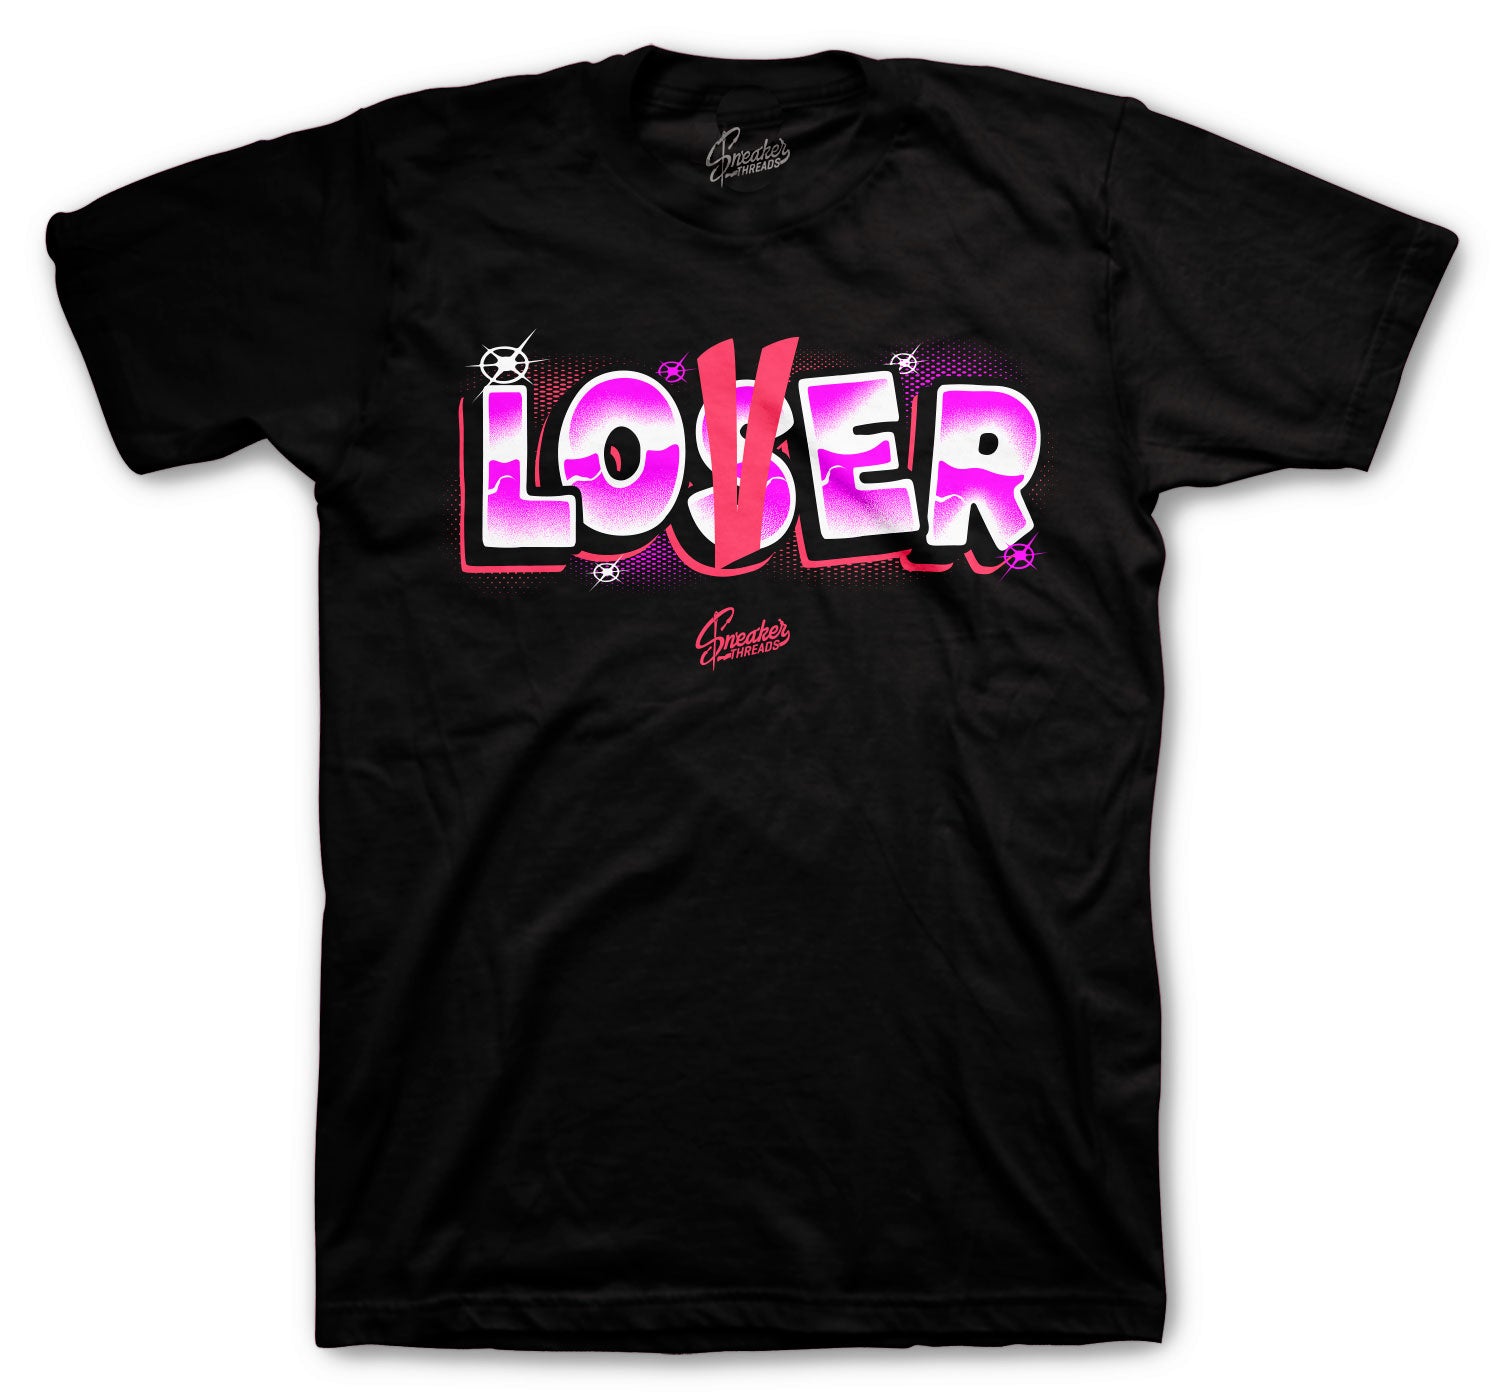 Retro 14 Shocking Pink Shirt - Lover - Black